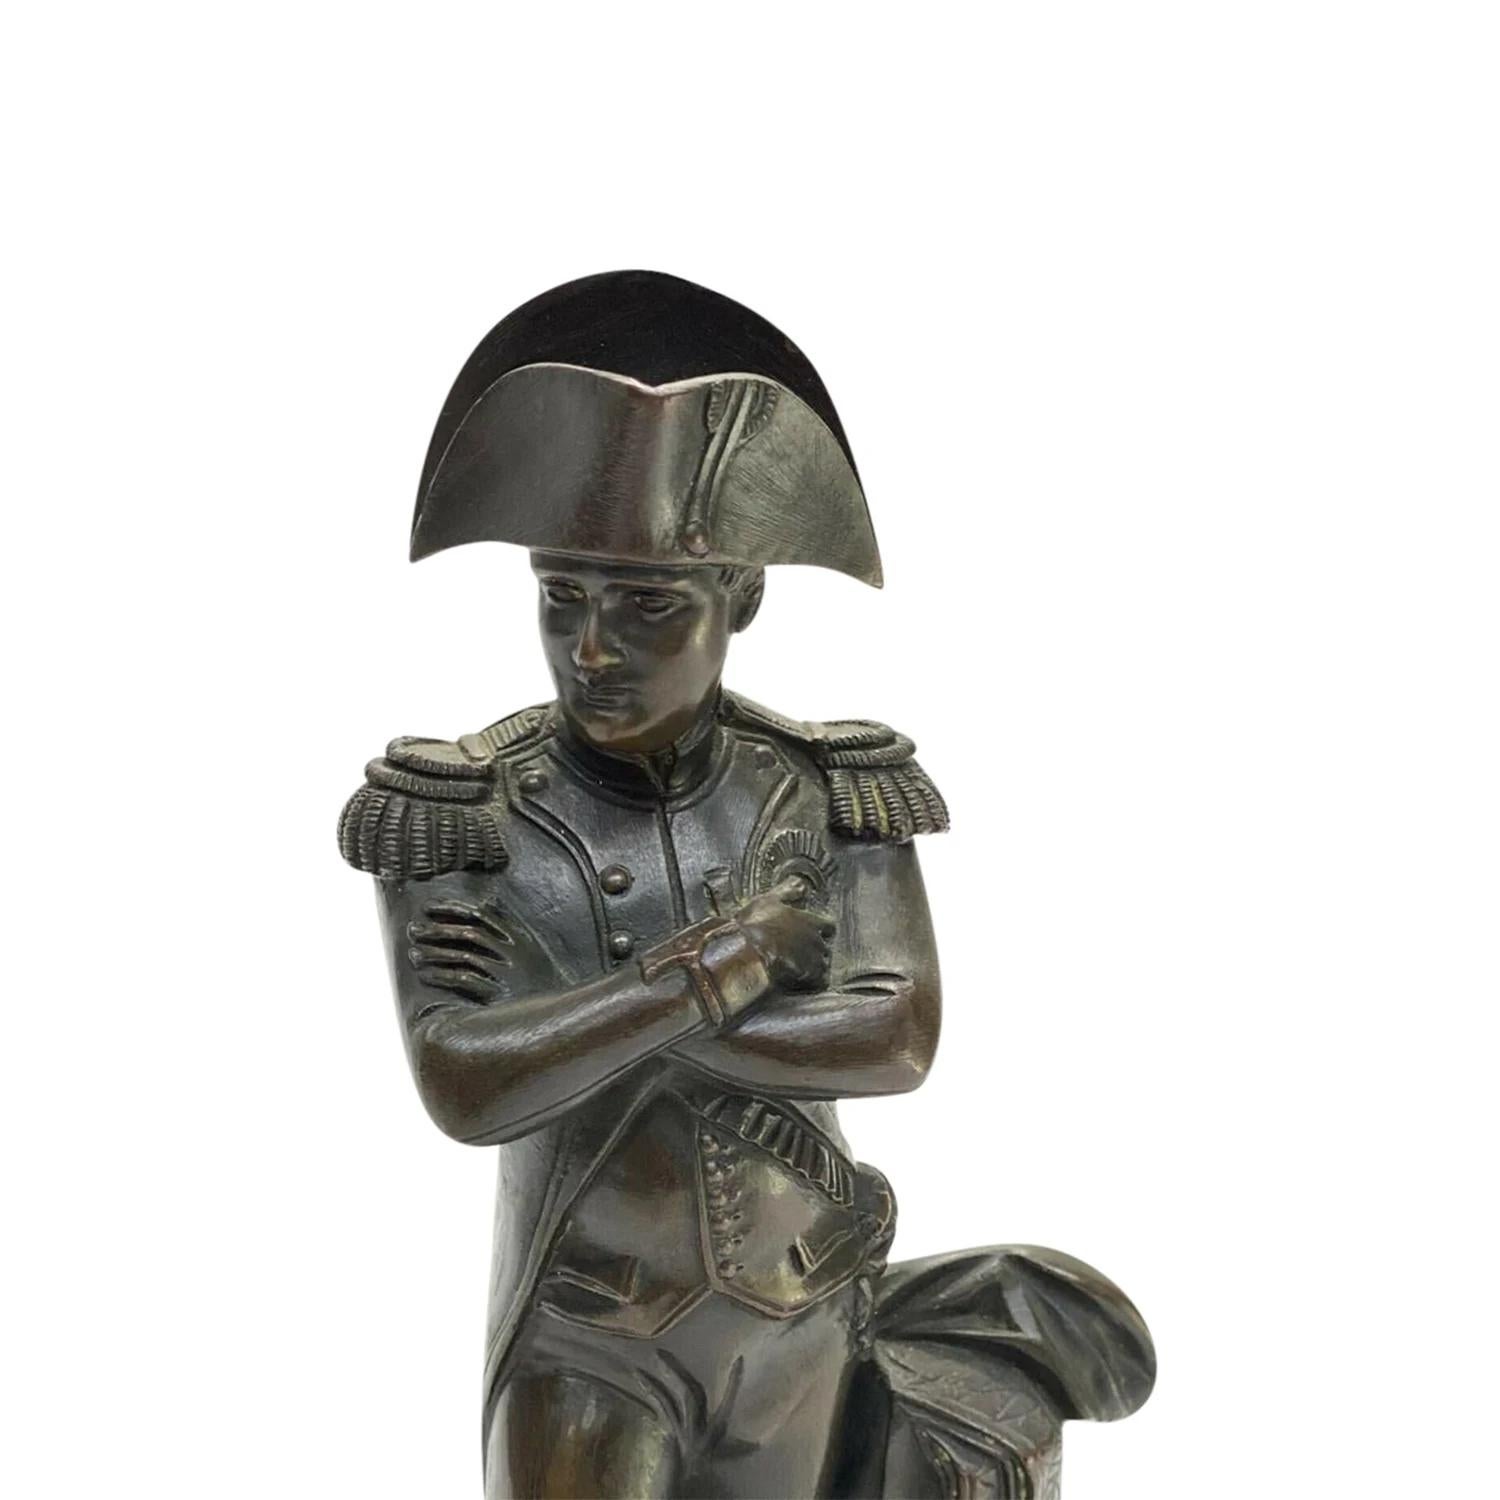 Buste de Napoléon Bonaparte en bronze patiné du 19e siècle, en bon état. La petite sculpture représente Napoléon en tenue militaire et en position de commandement. Cette pièce de décoration parisienne détaillée représente l'époque du Premier Empire